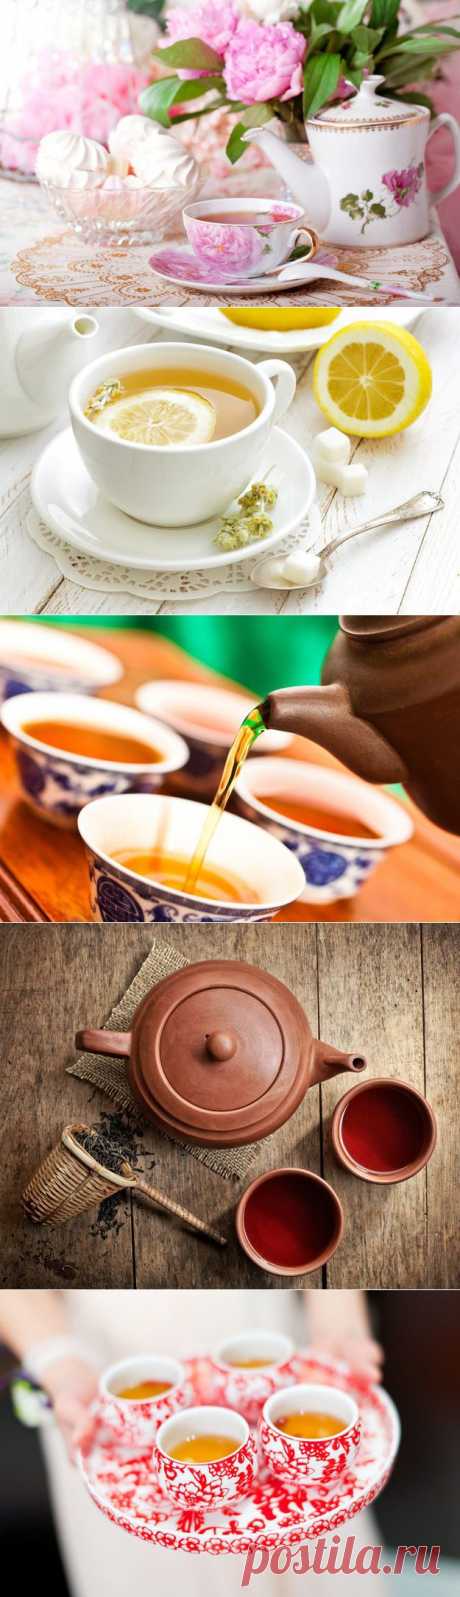 Как нельзя пить чай: 10 запретов в китайской чайной культуре | Советы Народной Мудрости